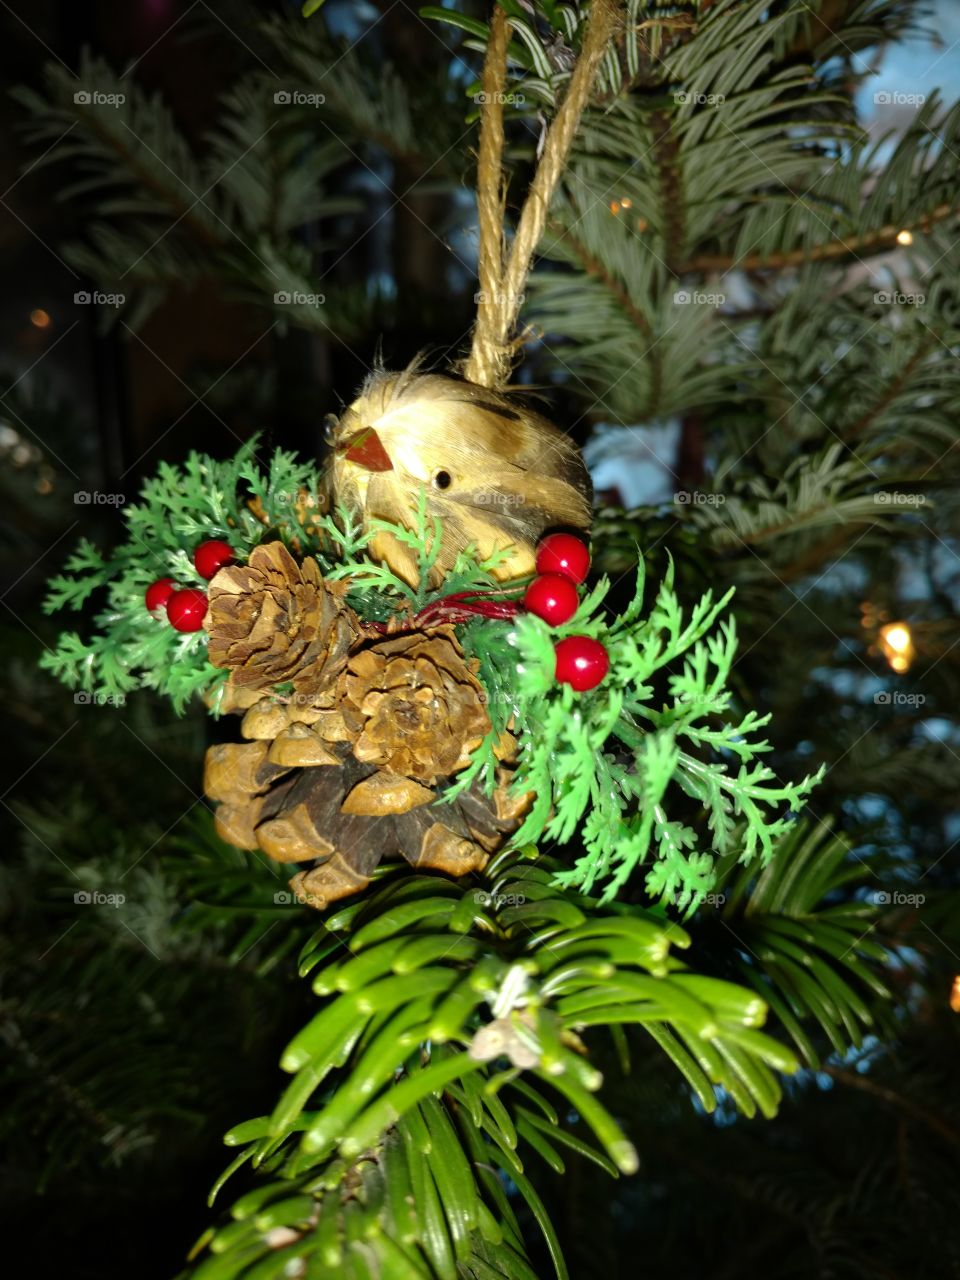 bird pine cone ornament